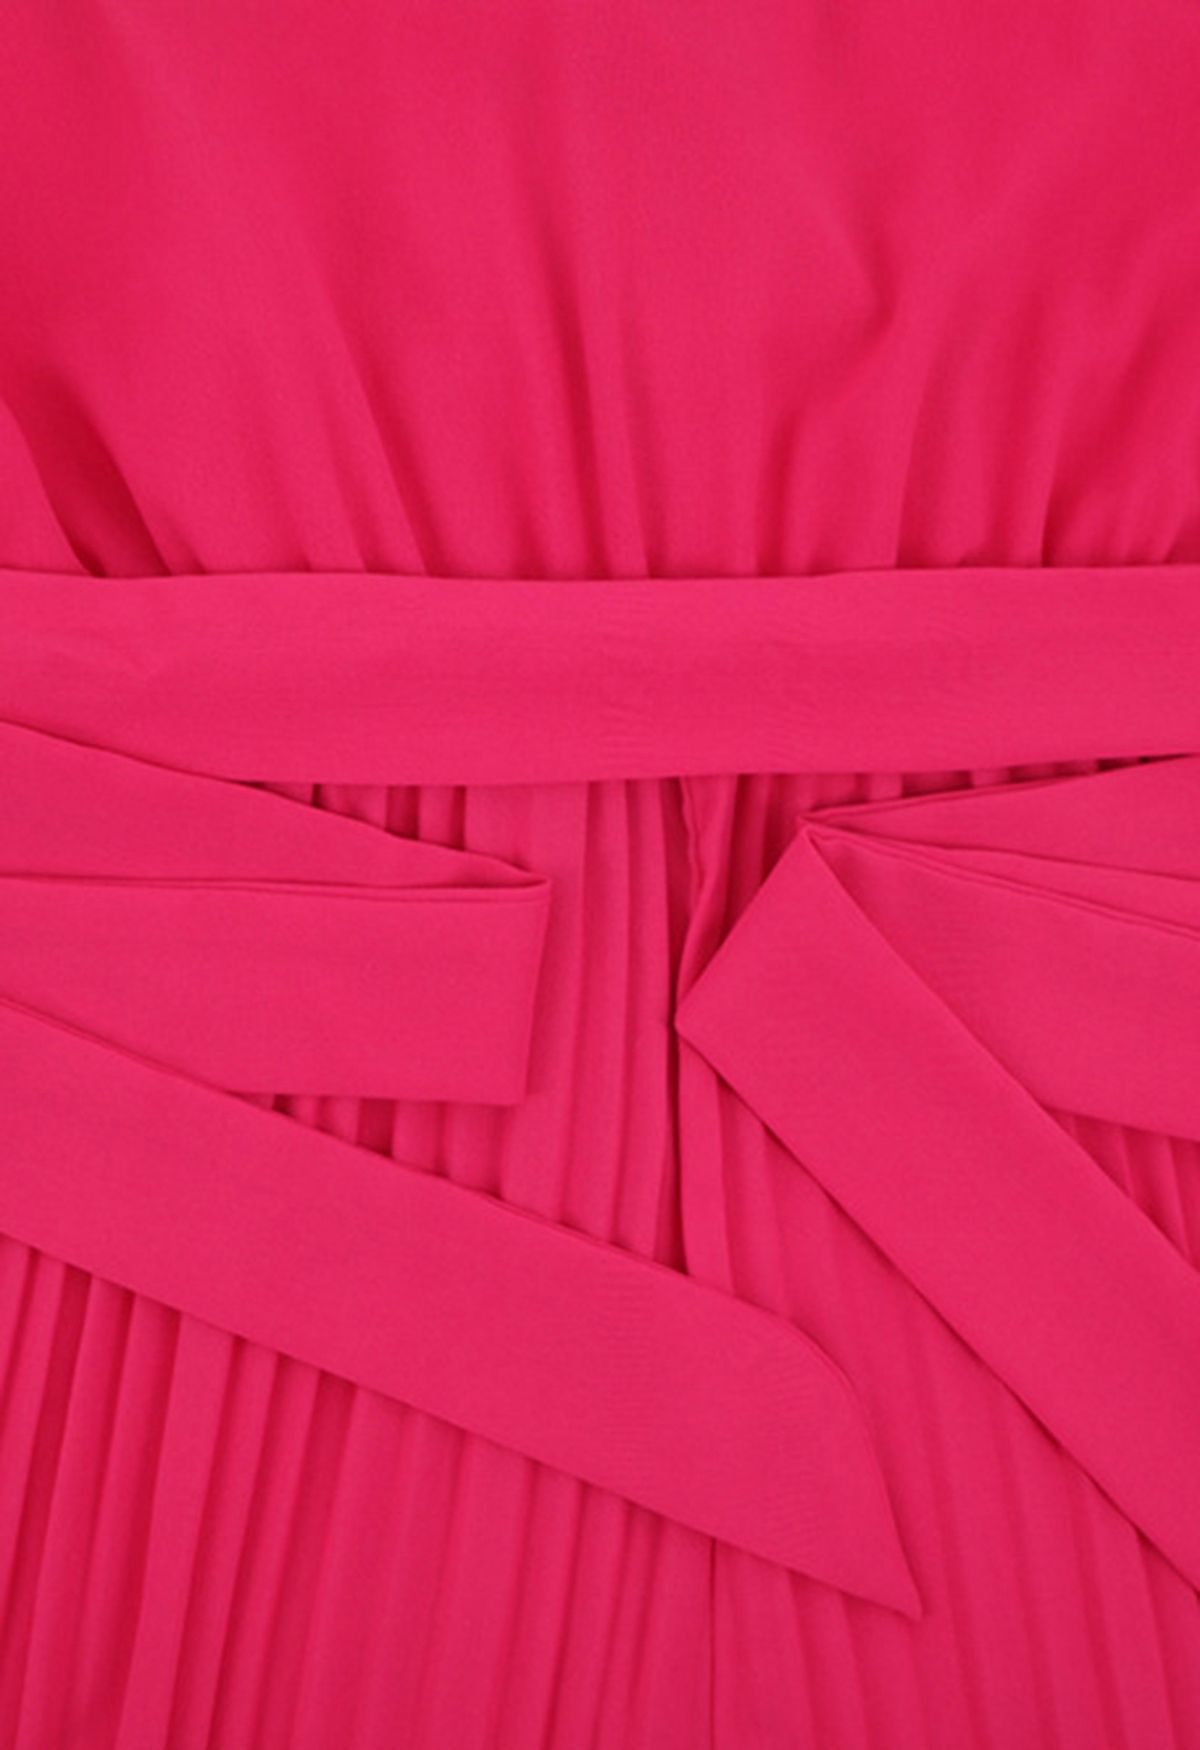 Gestufter Plissee-Jumpsuit in Wickeloptik mit Rüschen in Pink